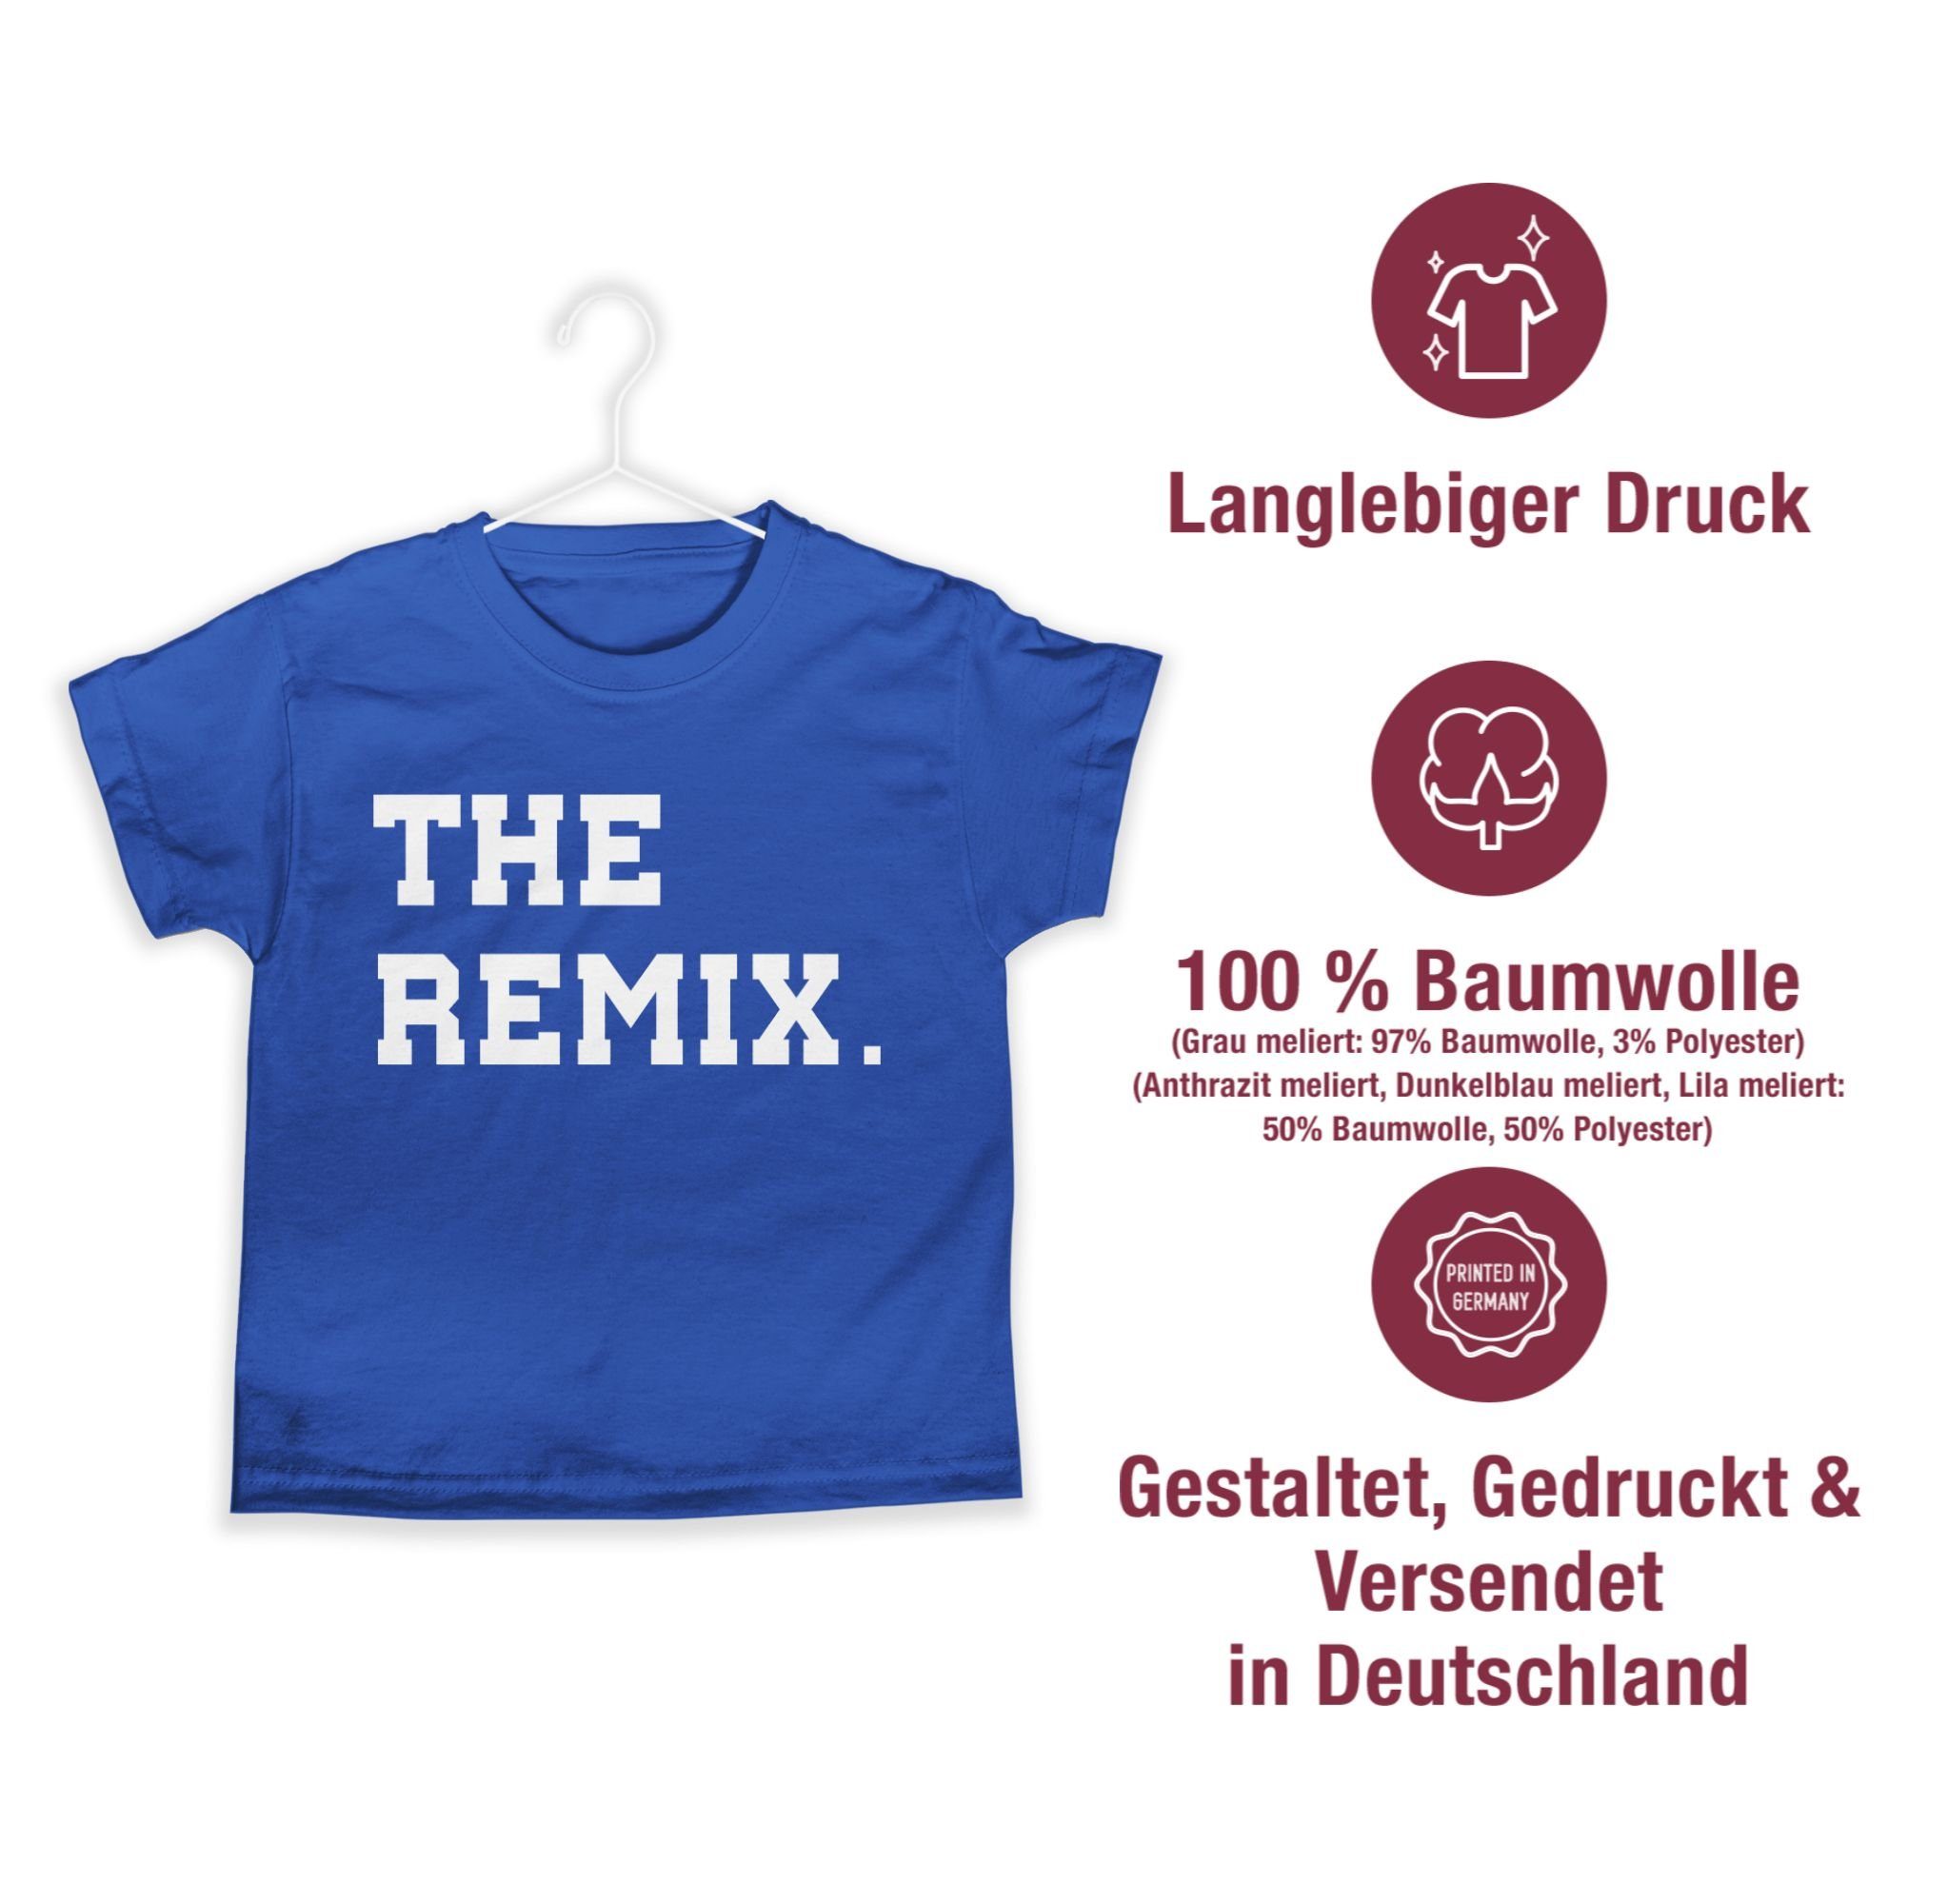 Shirtracer T-Shirt Familie Remix Kind Partner-Look Royalblau Kind Original The 3 The